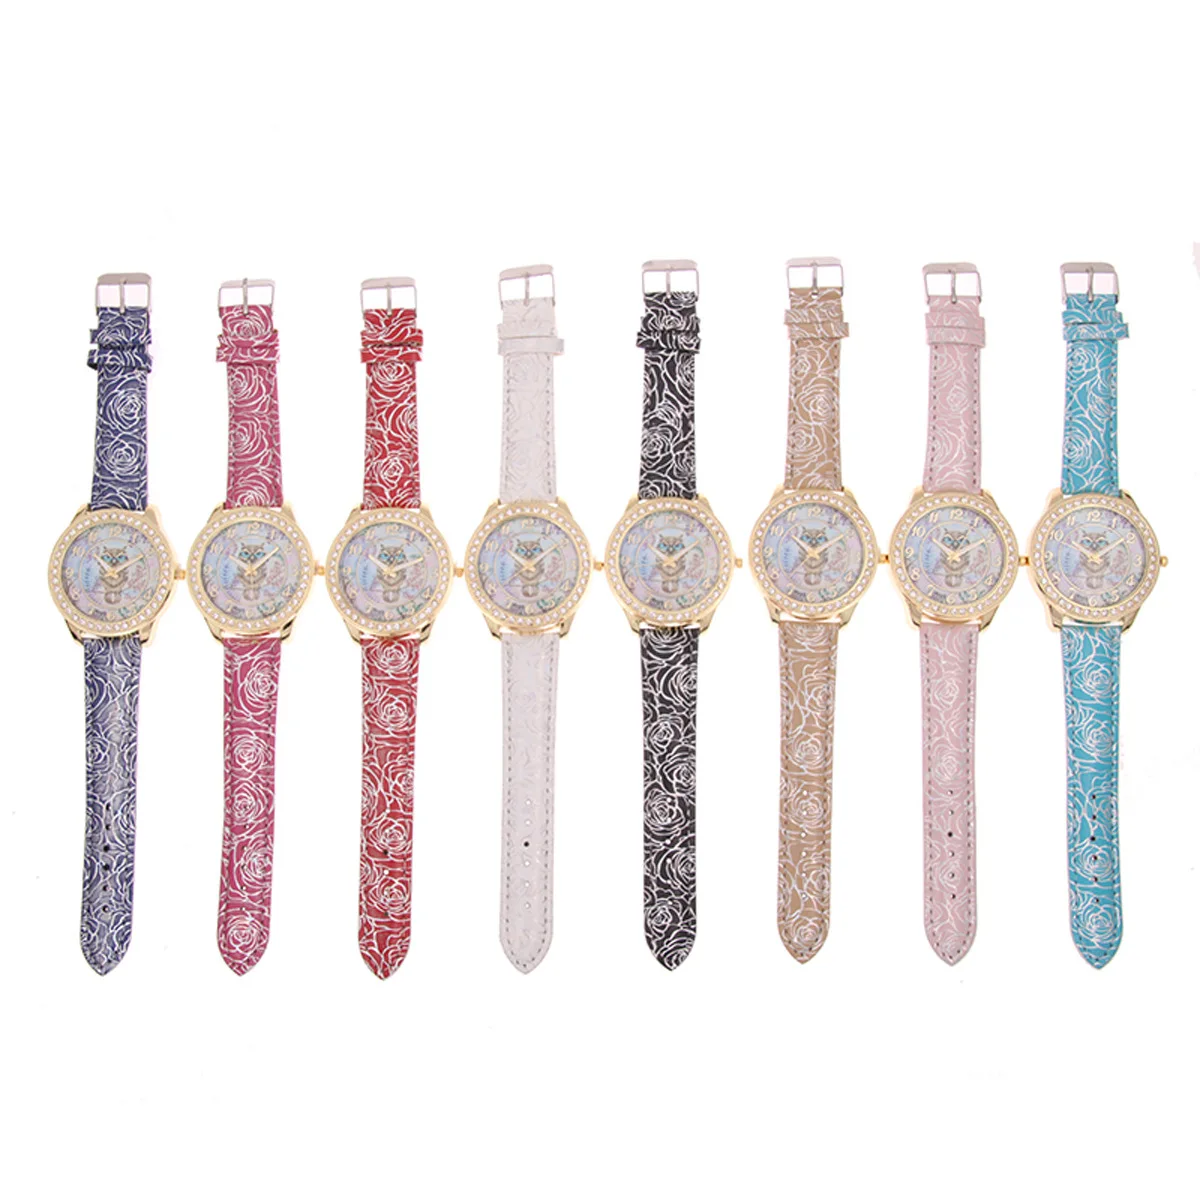 Роскошные женские наручные часы с розовым узором, кожаный браслет, дизайн совы, золотые повседневные часы со стразами